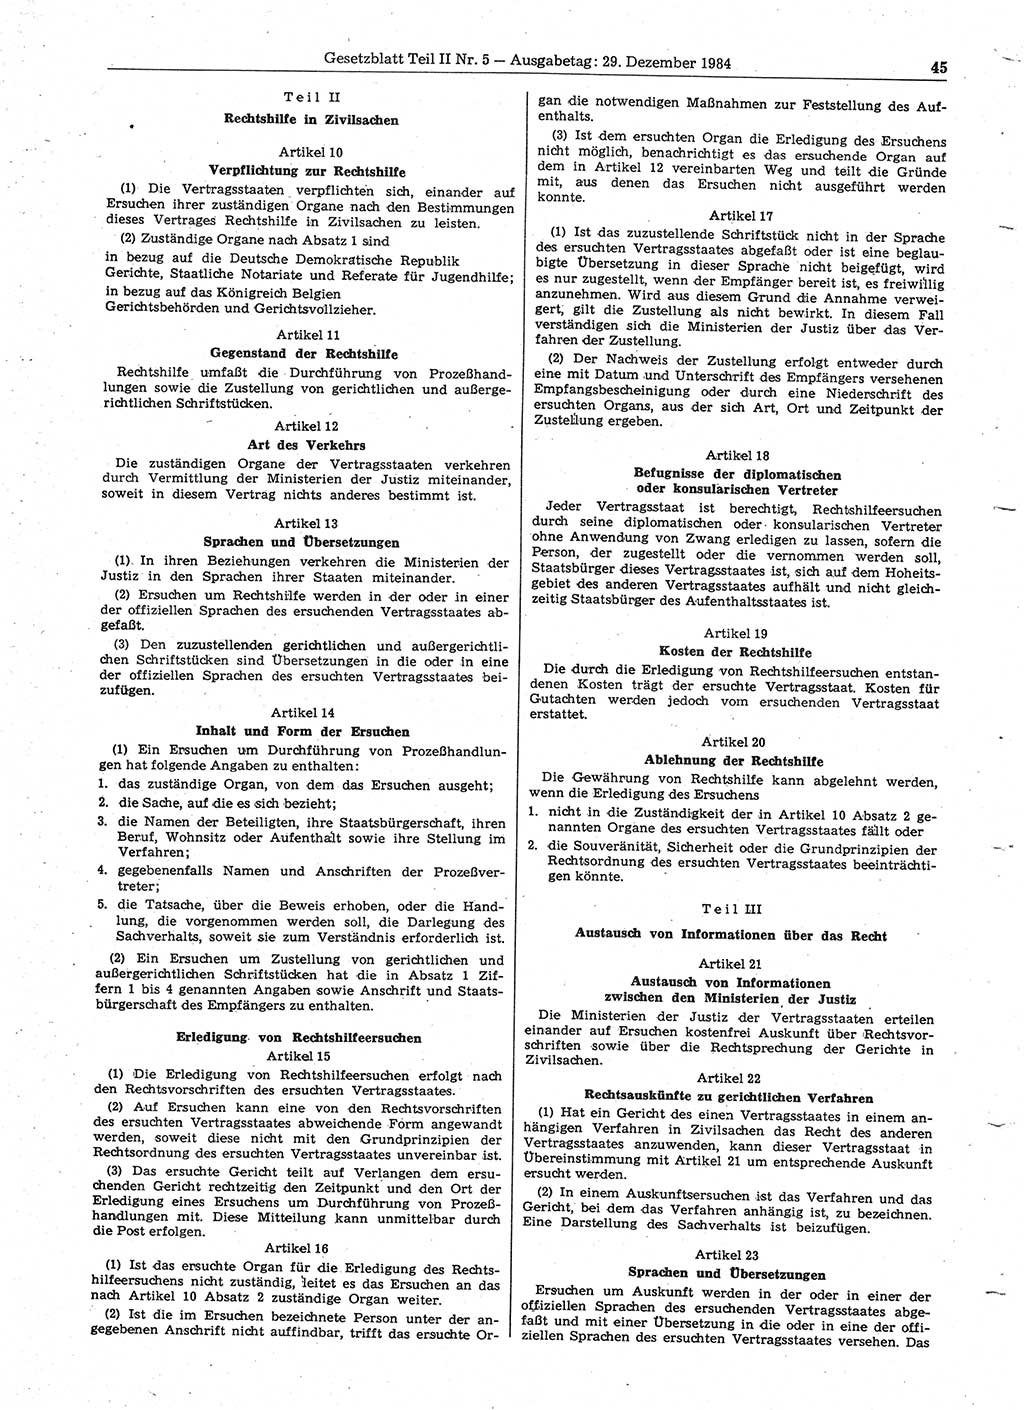 Gesetzblatt (GBl.) der Deutschen Demokratischen Republik (DDR) Teil ⅠⅠ 1984, Seite 45 (GBl. DDR ⅠⅠ 1984, S. 45)